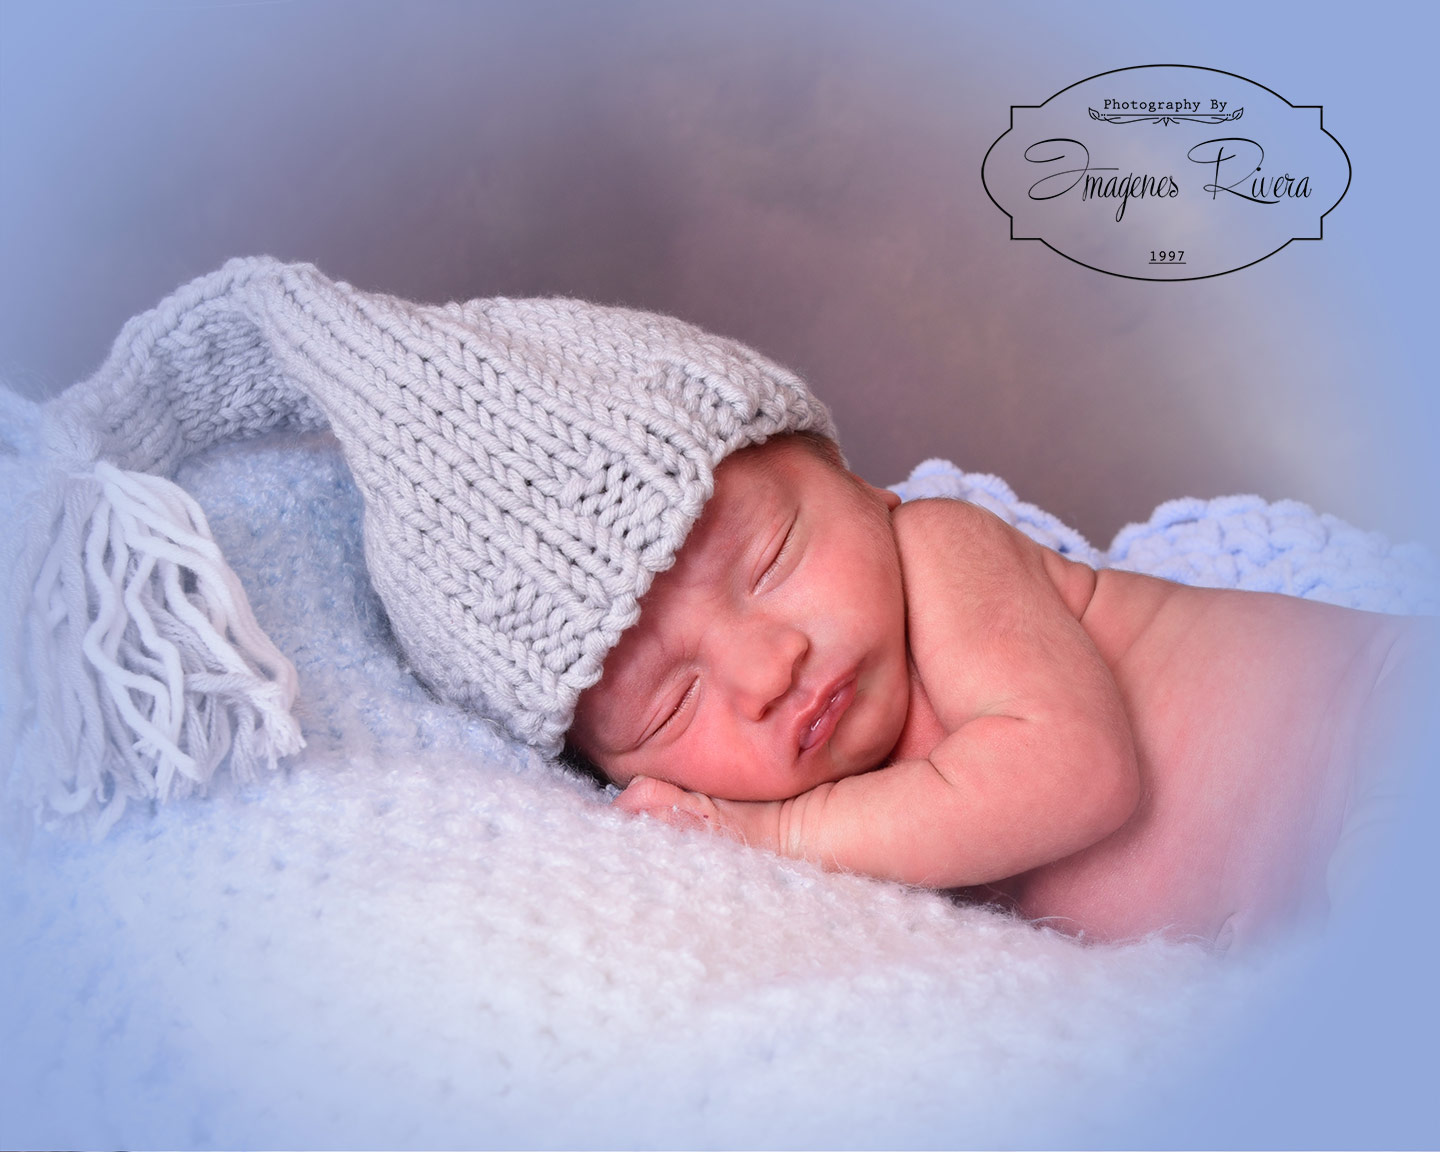 ♥ Welcoming Samuell | Imagenes Rivera Miami newborn photographer ♥